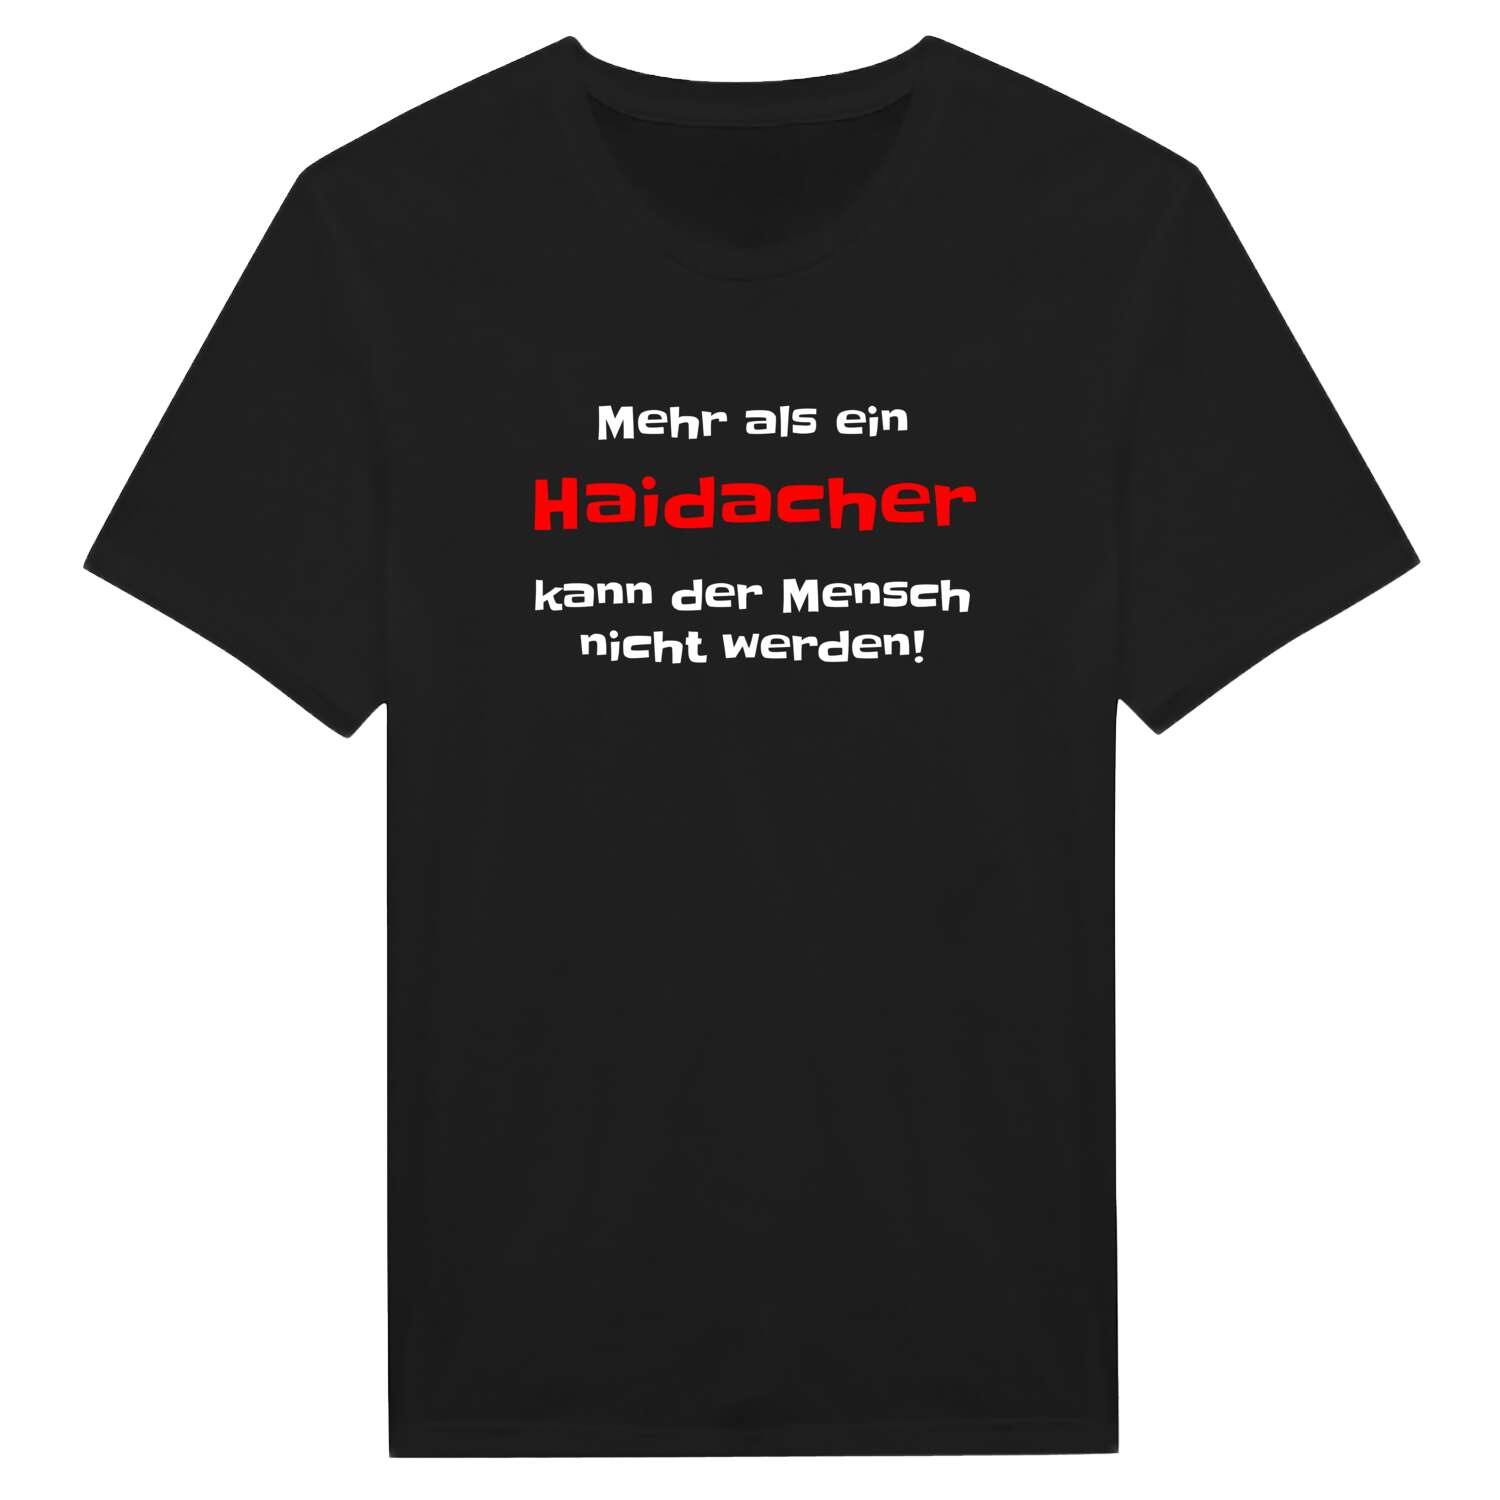 Haidach T-Shirt »Mehr als ein«